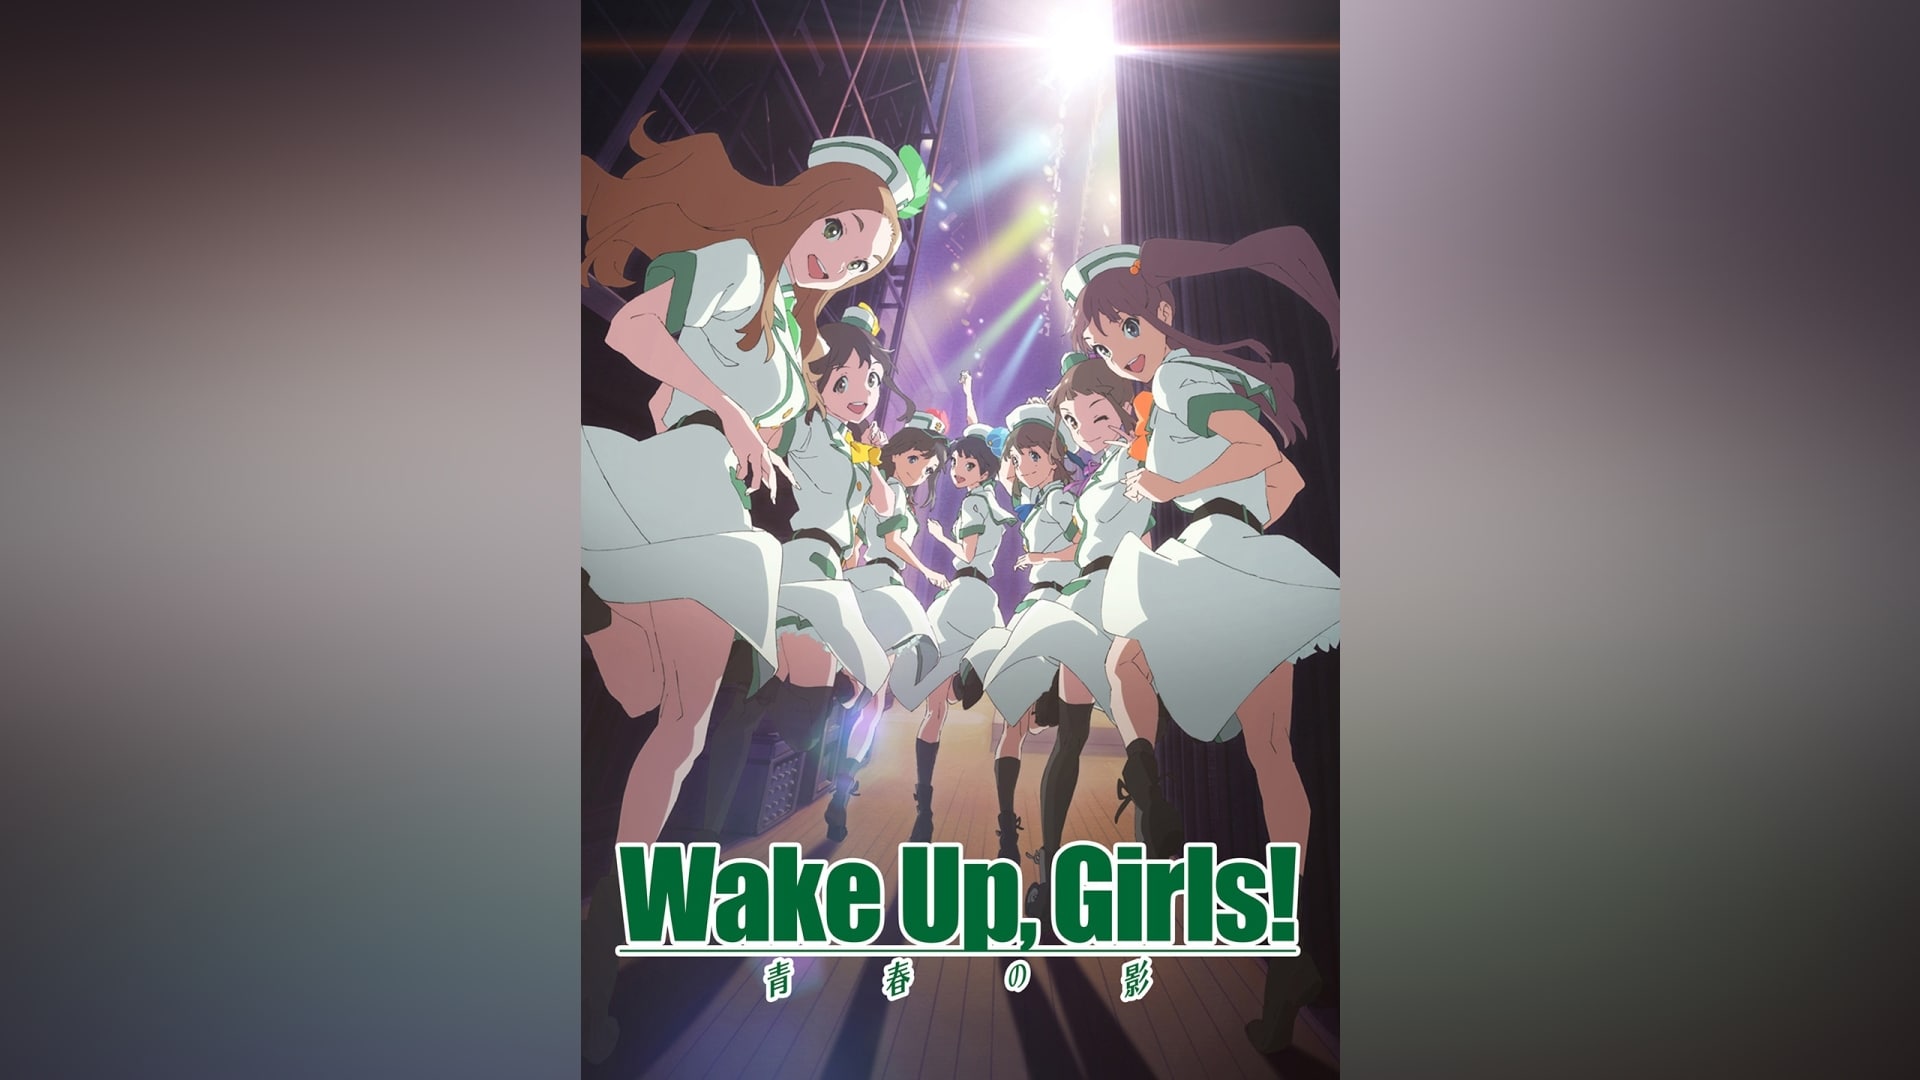 【簡単購入】Wake Up. Girls! 青春の影 Beyond the Bottom 初回限定盤 BD ソフマップ 全巻 連続 購入 特典 描き下ろし 前後編 収納BOX その他